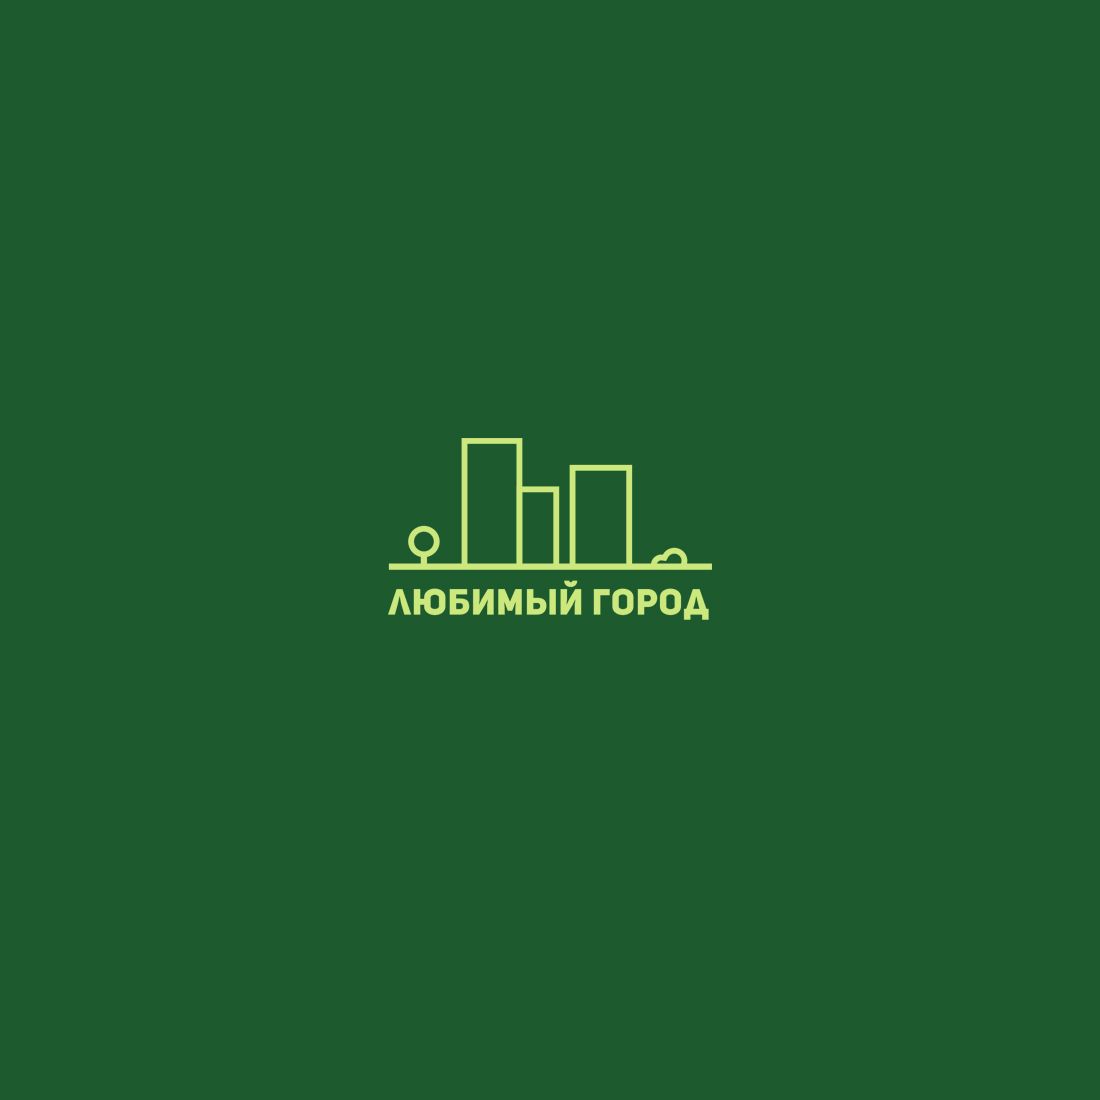 Лого для агентства недвиж и юридических услуг - дизайнер IIsixo_O